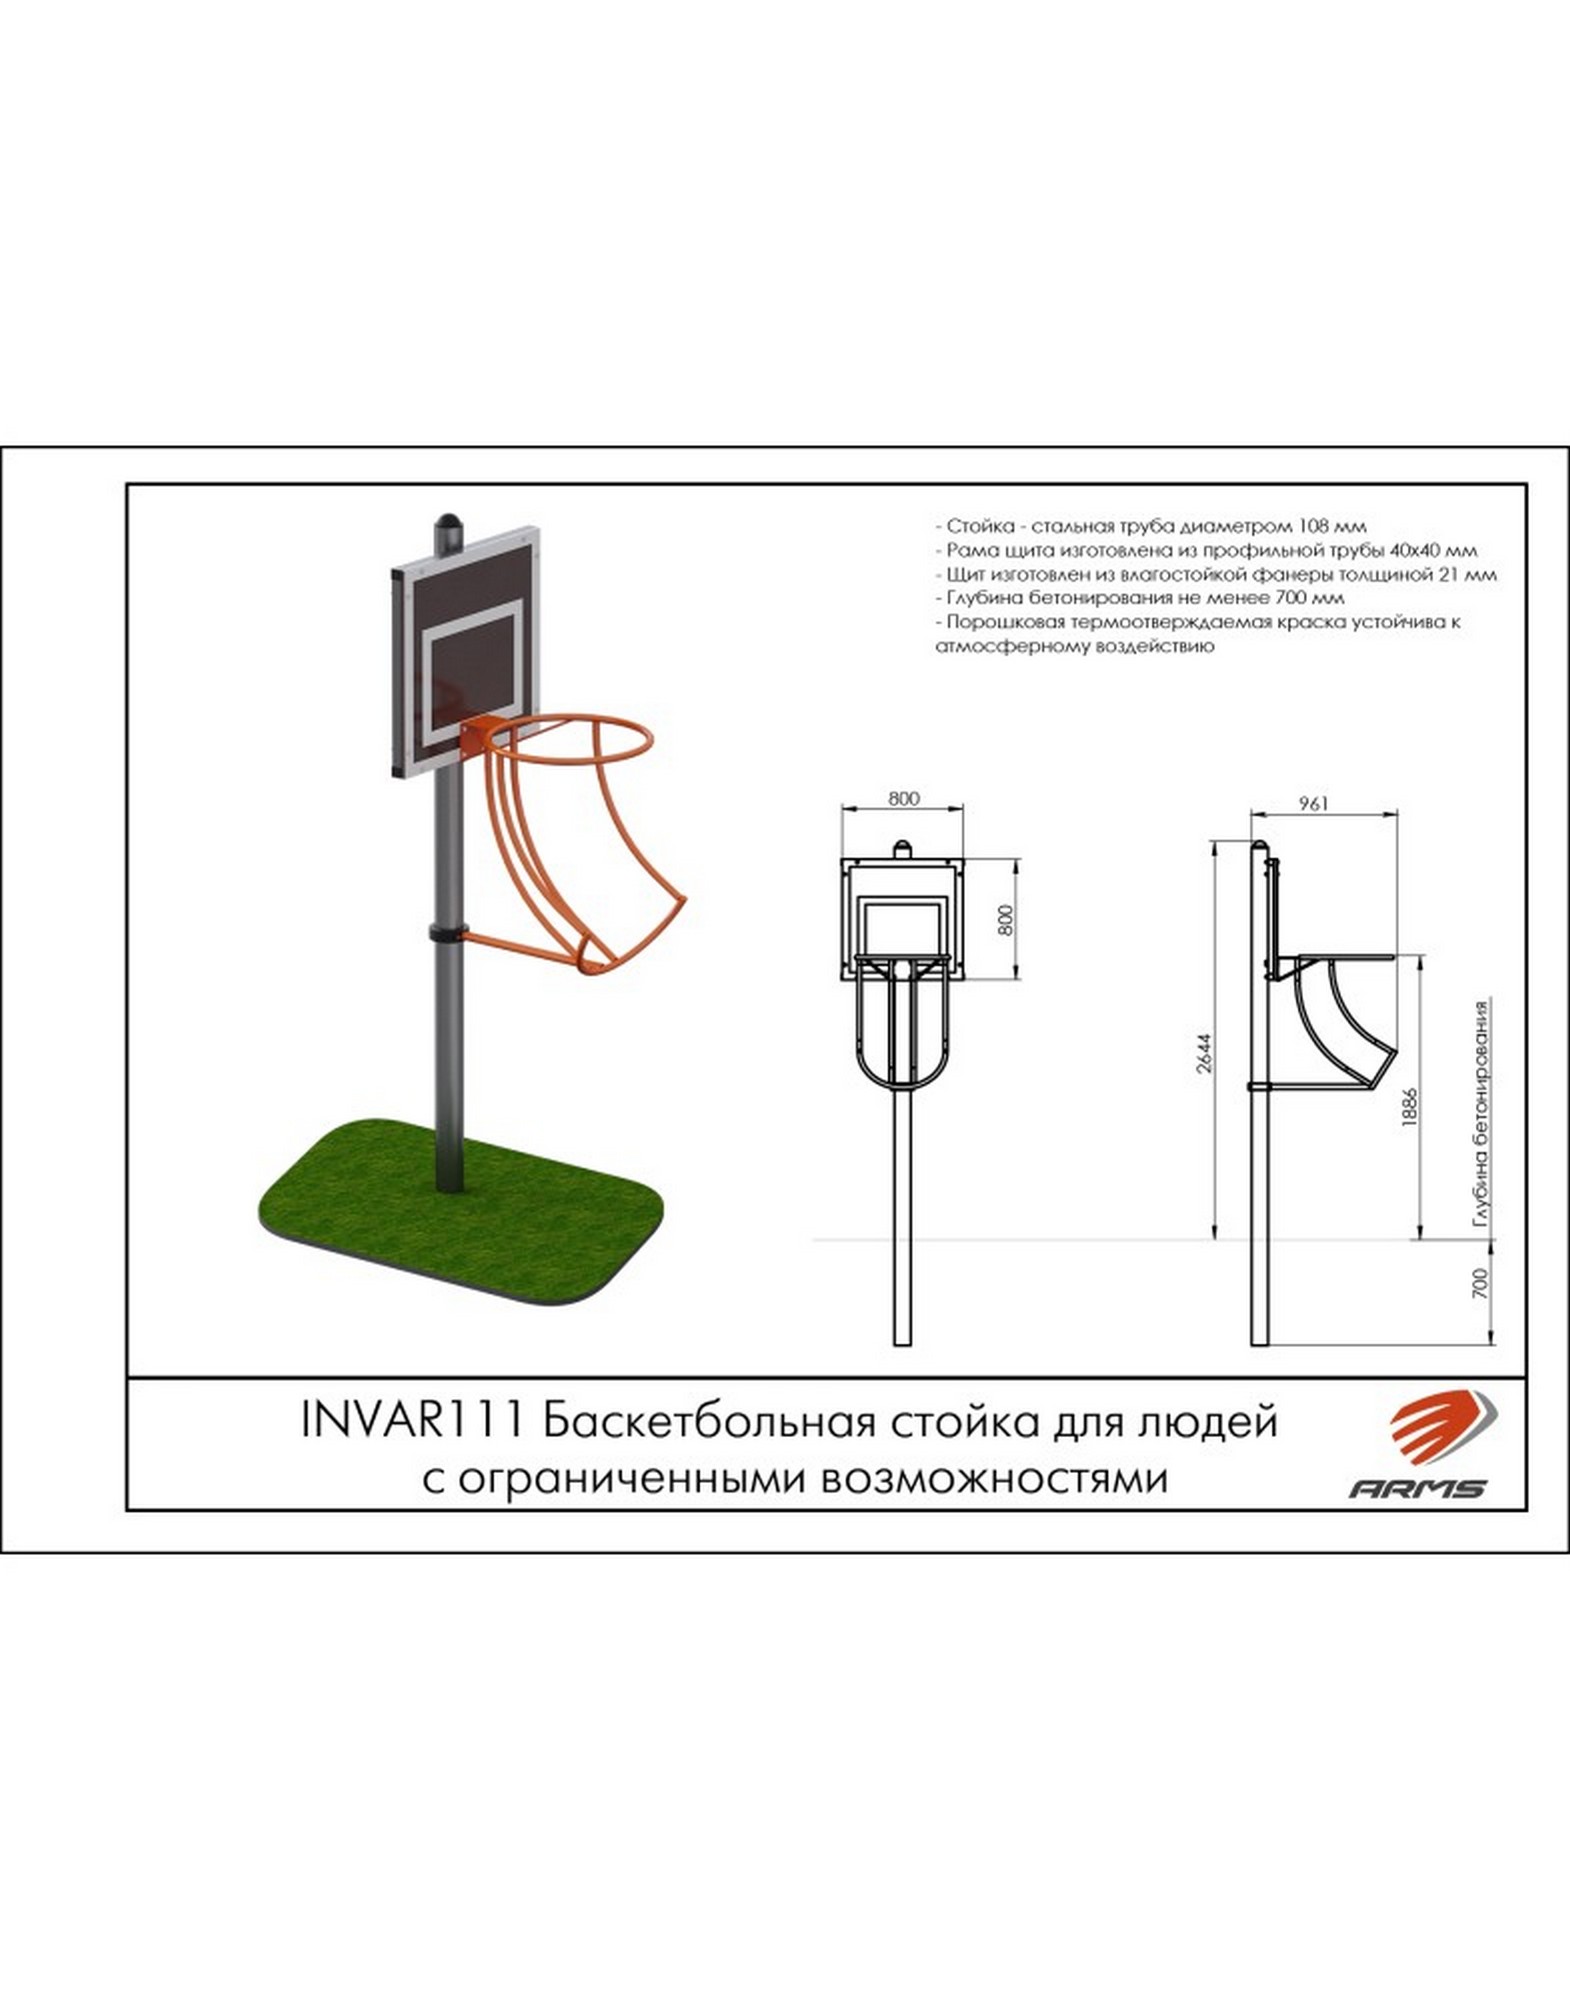 Баскетбольная стойка для людей с ограниченными возможностями ARMS INVAR111 1570_2000